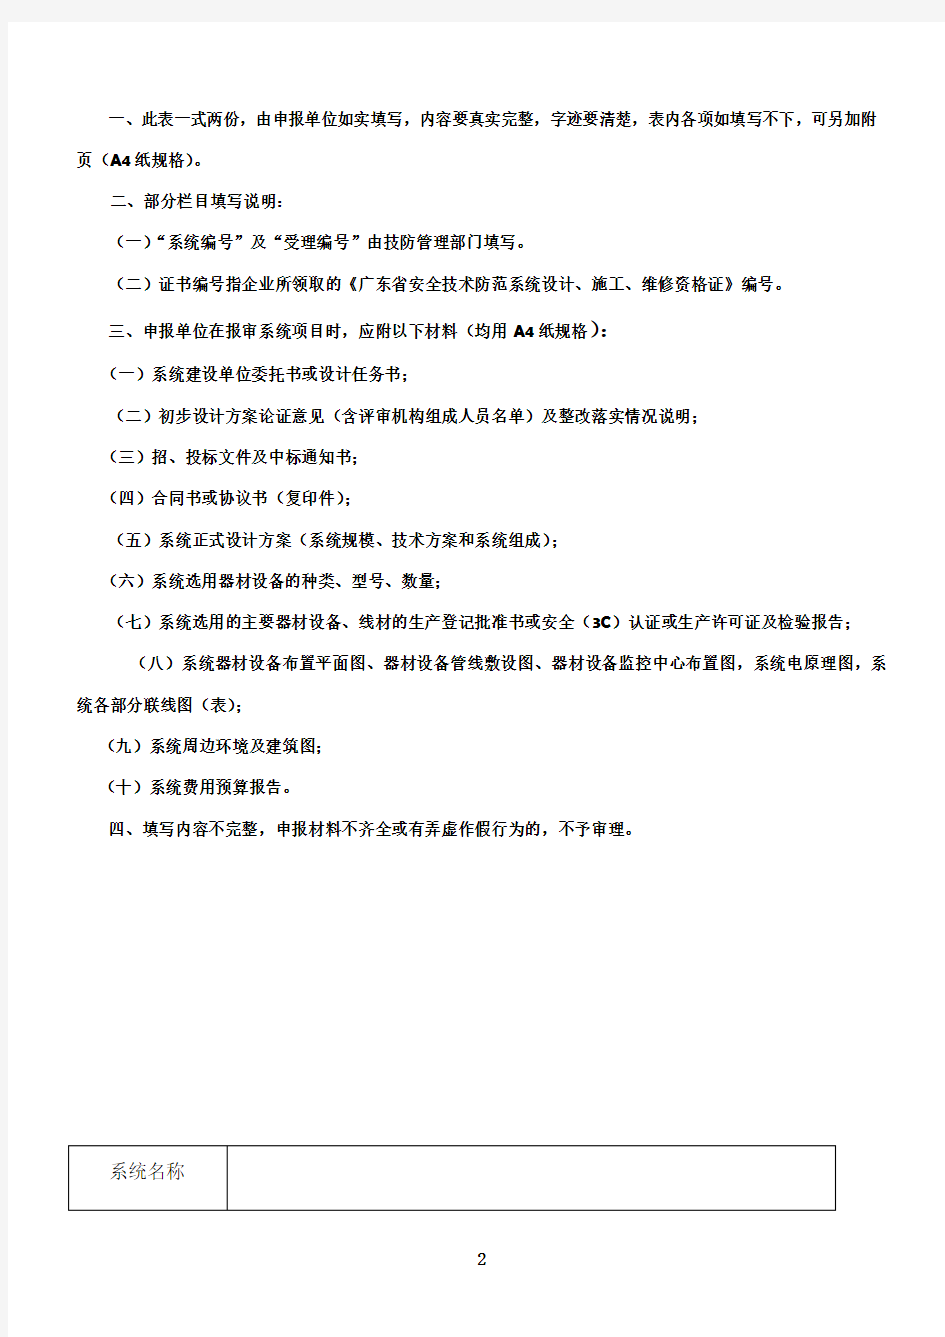 广东省安全技术防范系统申报表(新版)